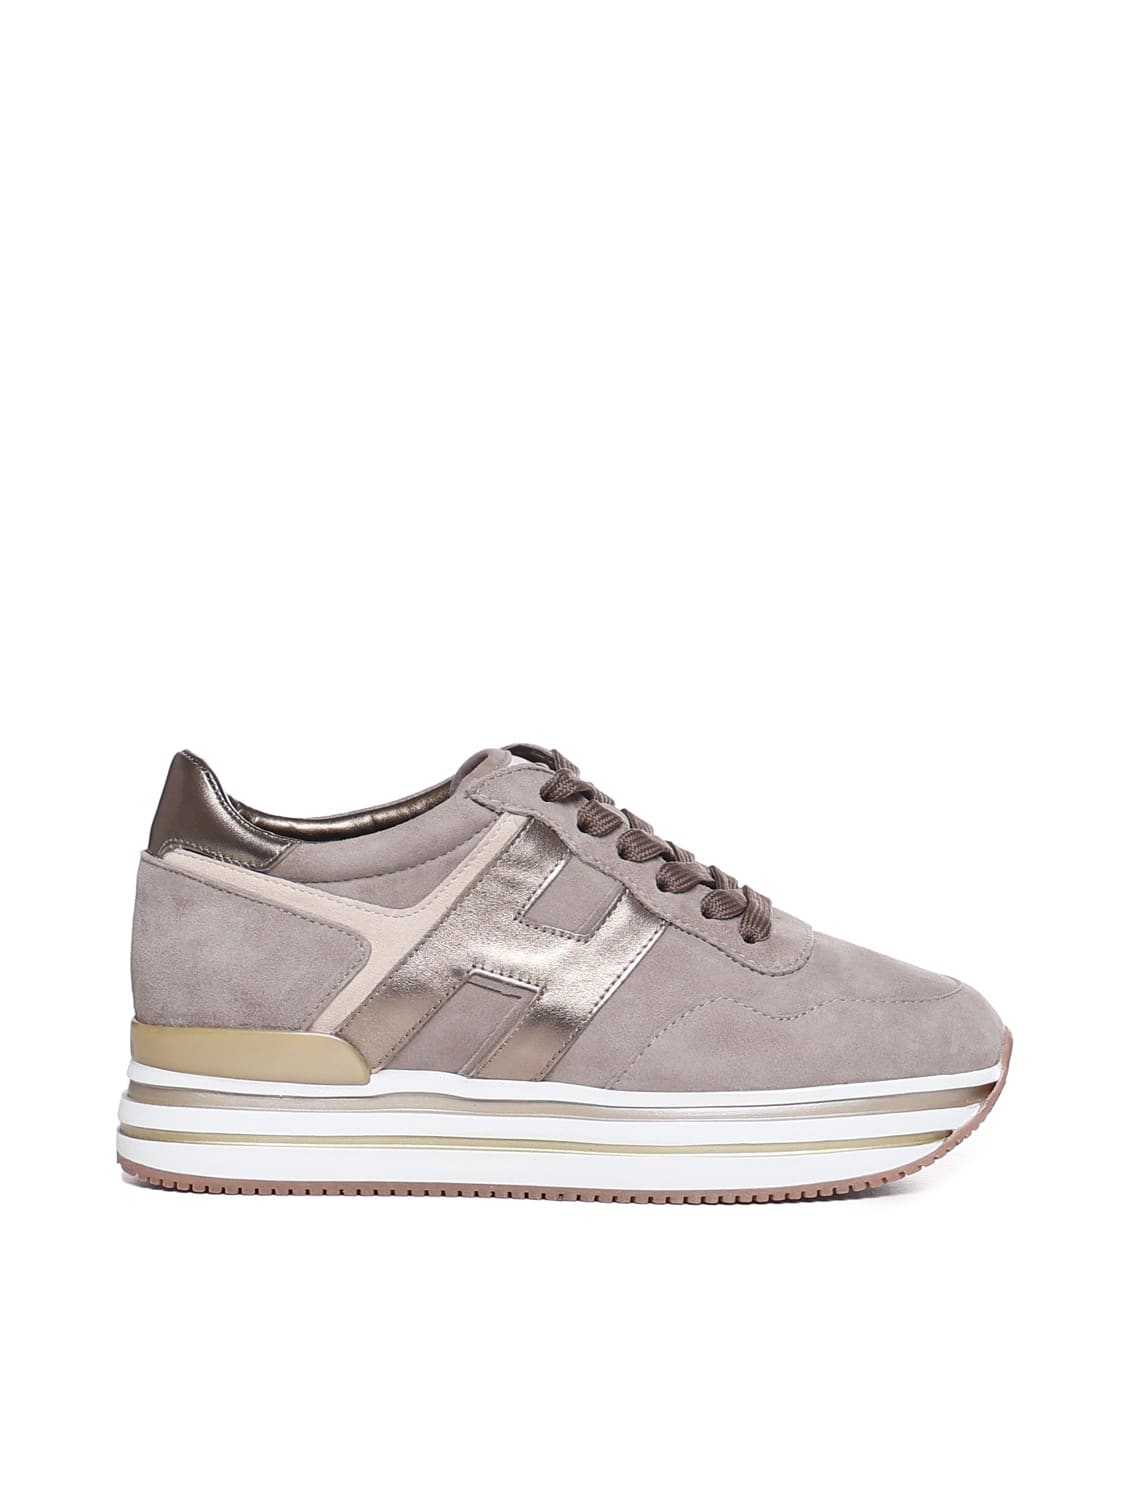 Hogan Midi Sneakers H222 In Gray